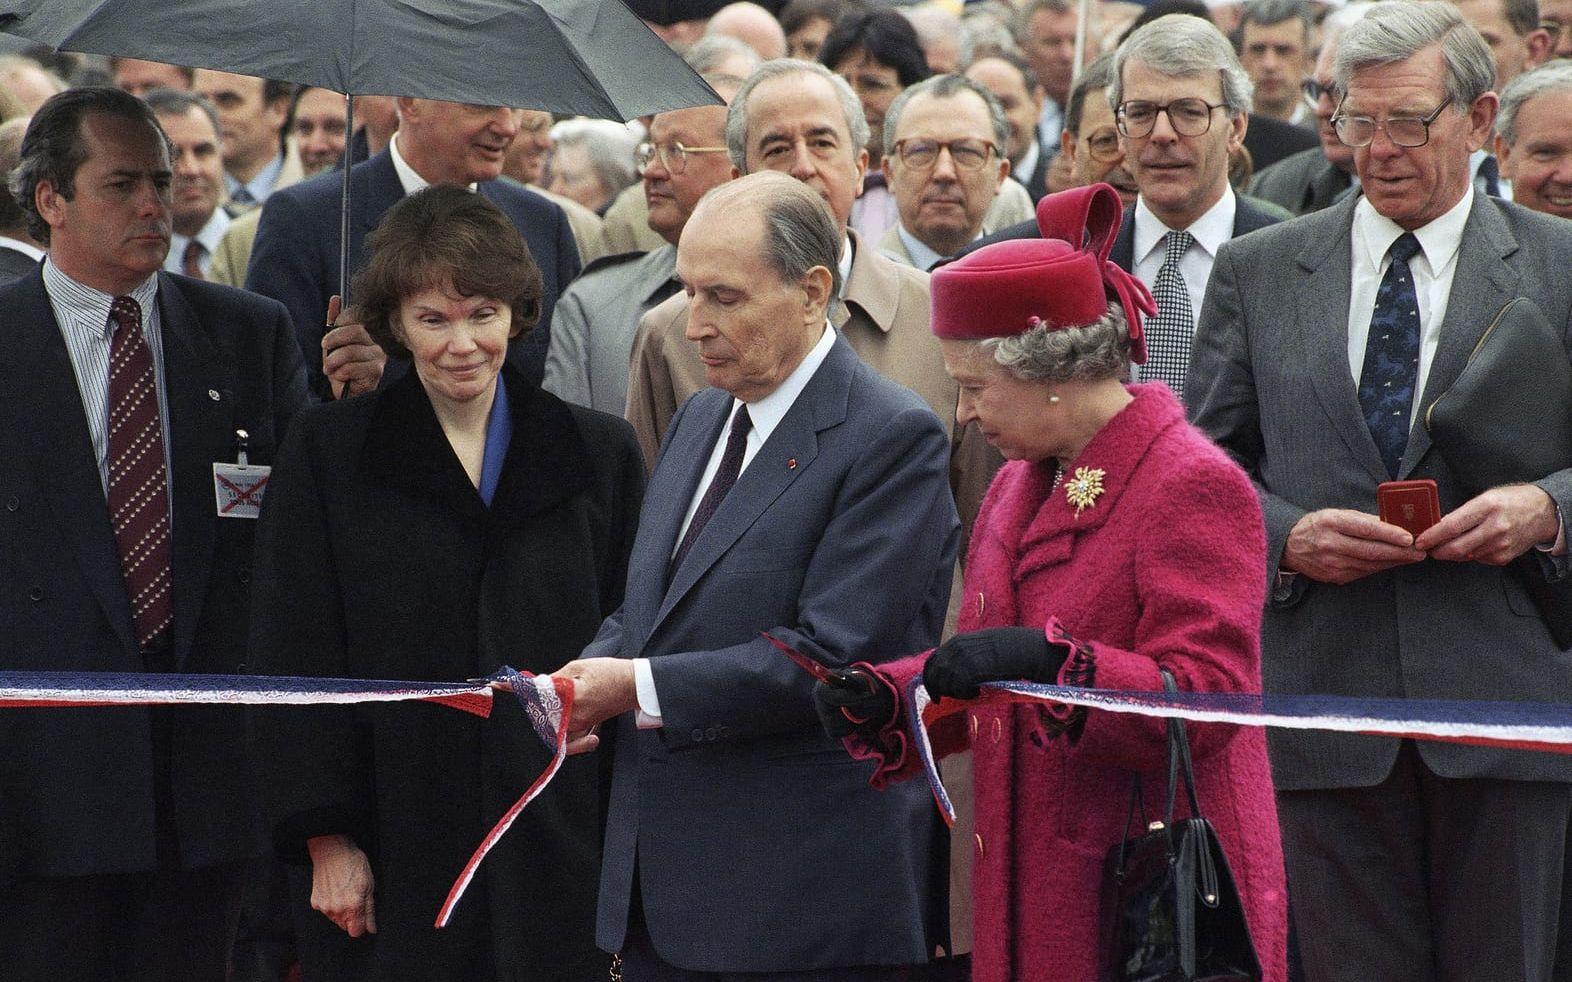 Drottning Elizabeth och Frankrikes dåvarande president Francois Mitterrandinvider Kanaltunneln under Engelska kanalen fredag 6 maj, 1994. John Major står till höger om drottningen.